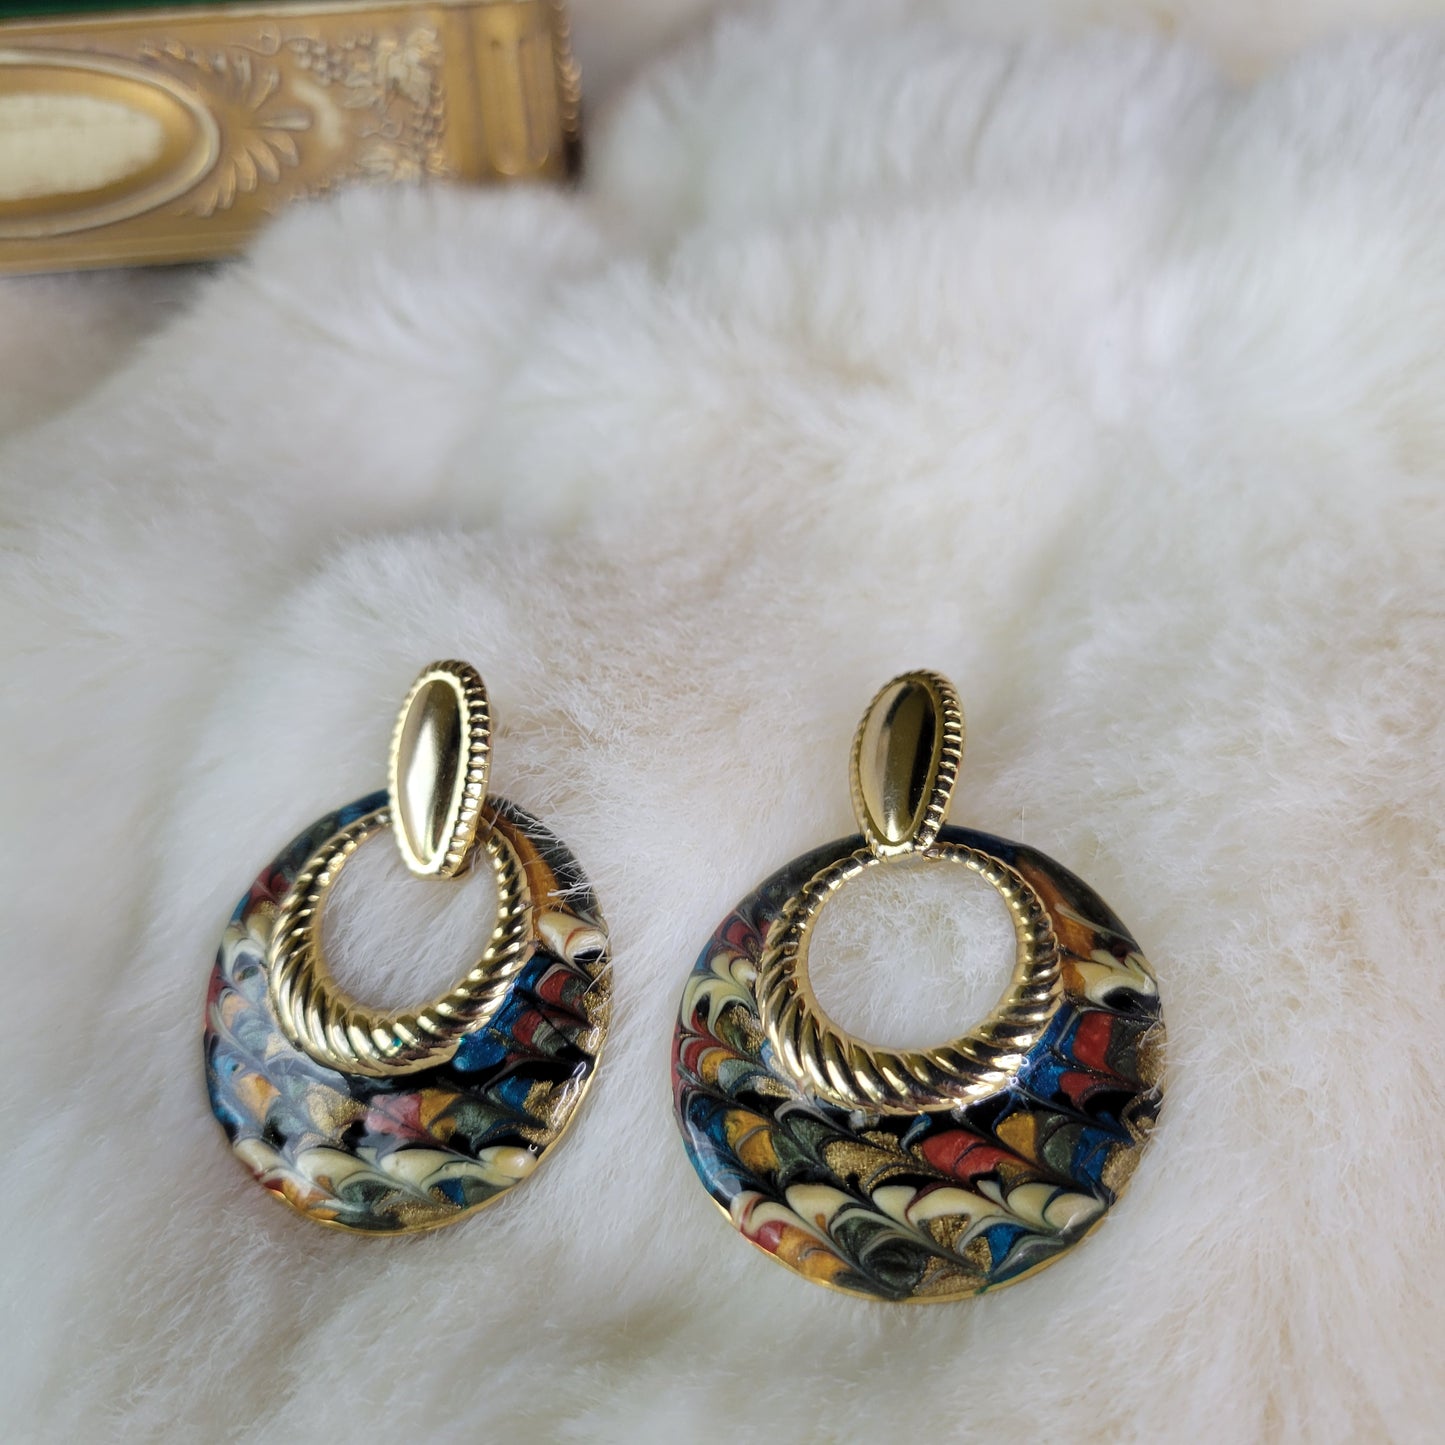 Gold Vintage Hoop Drop Earrings with Tie Dye Enamel Fill - Pierced